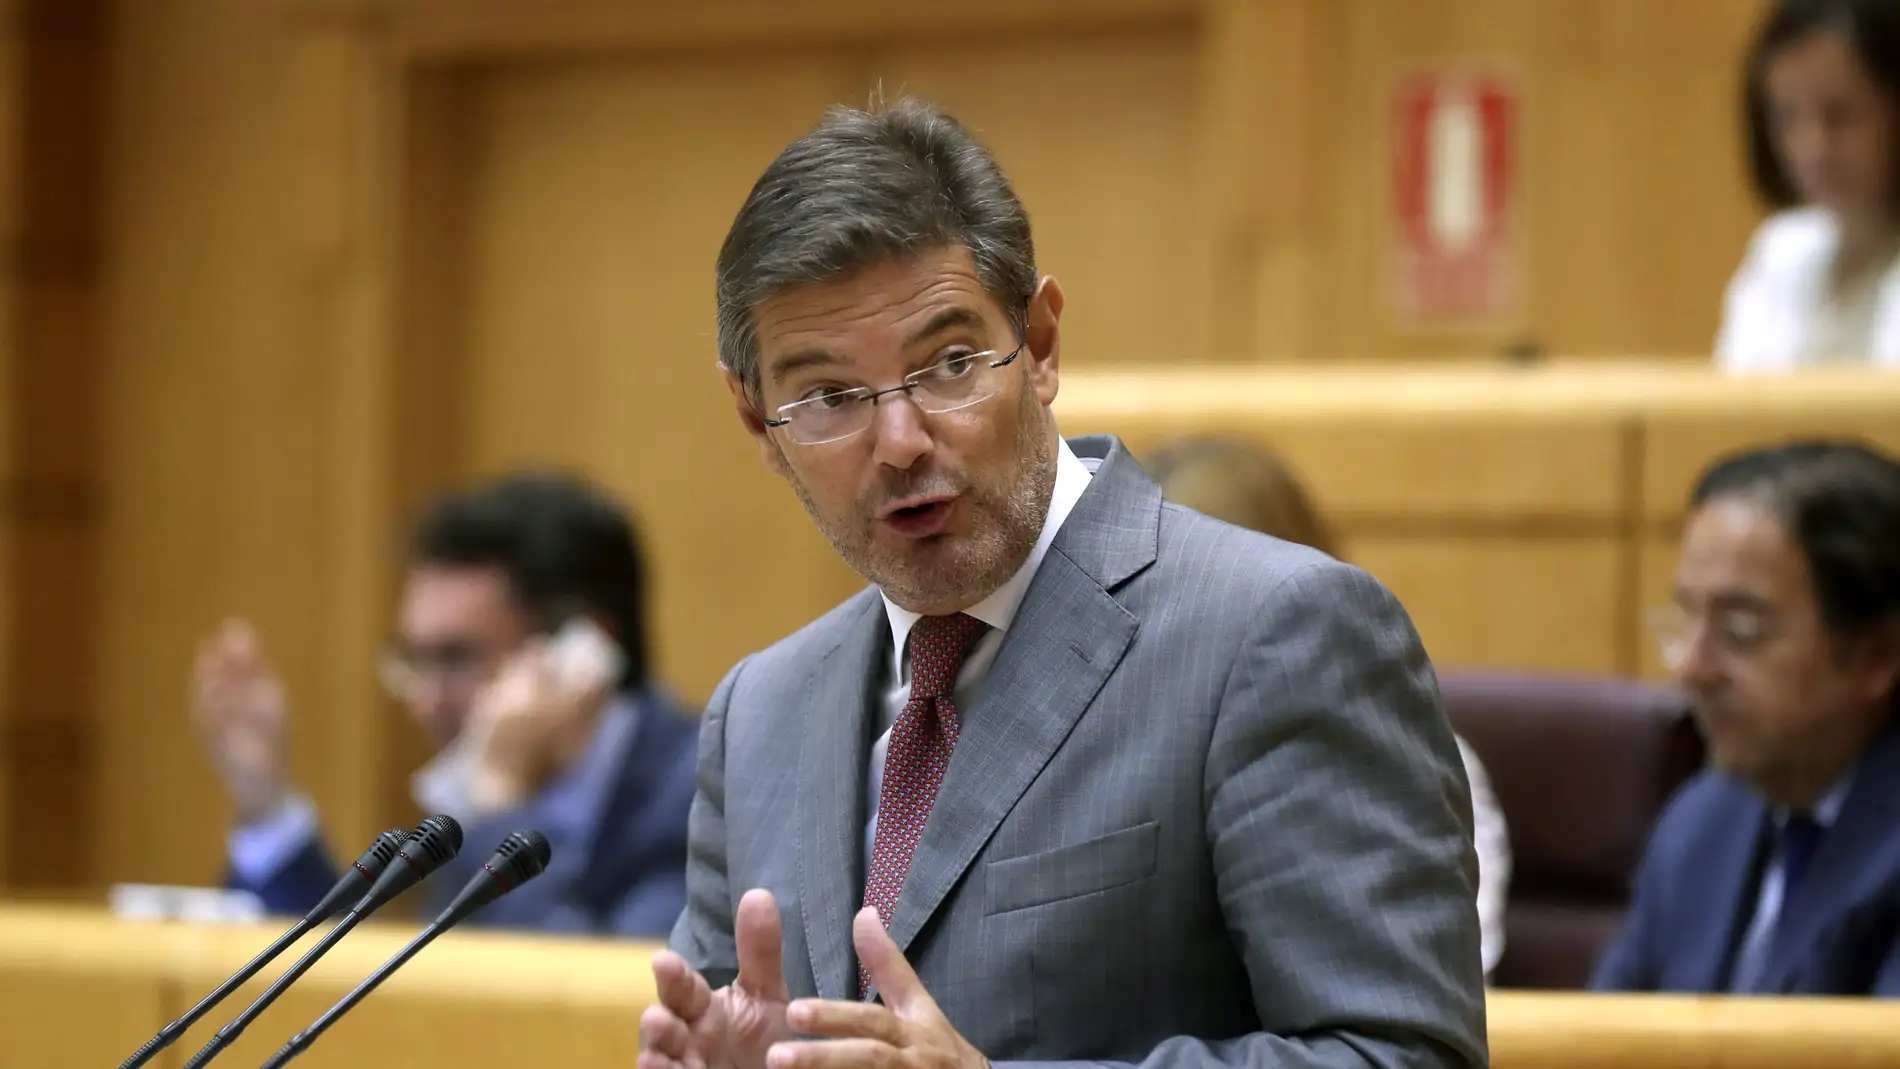 El ministro de justicia, Rafael Catalá